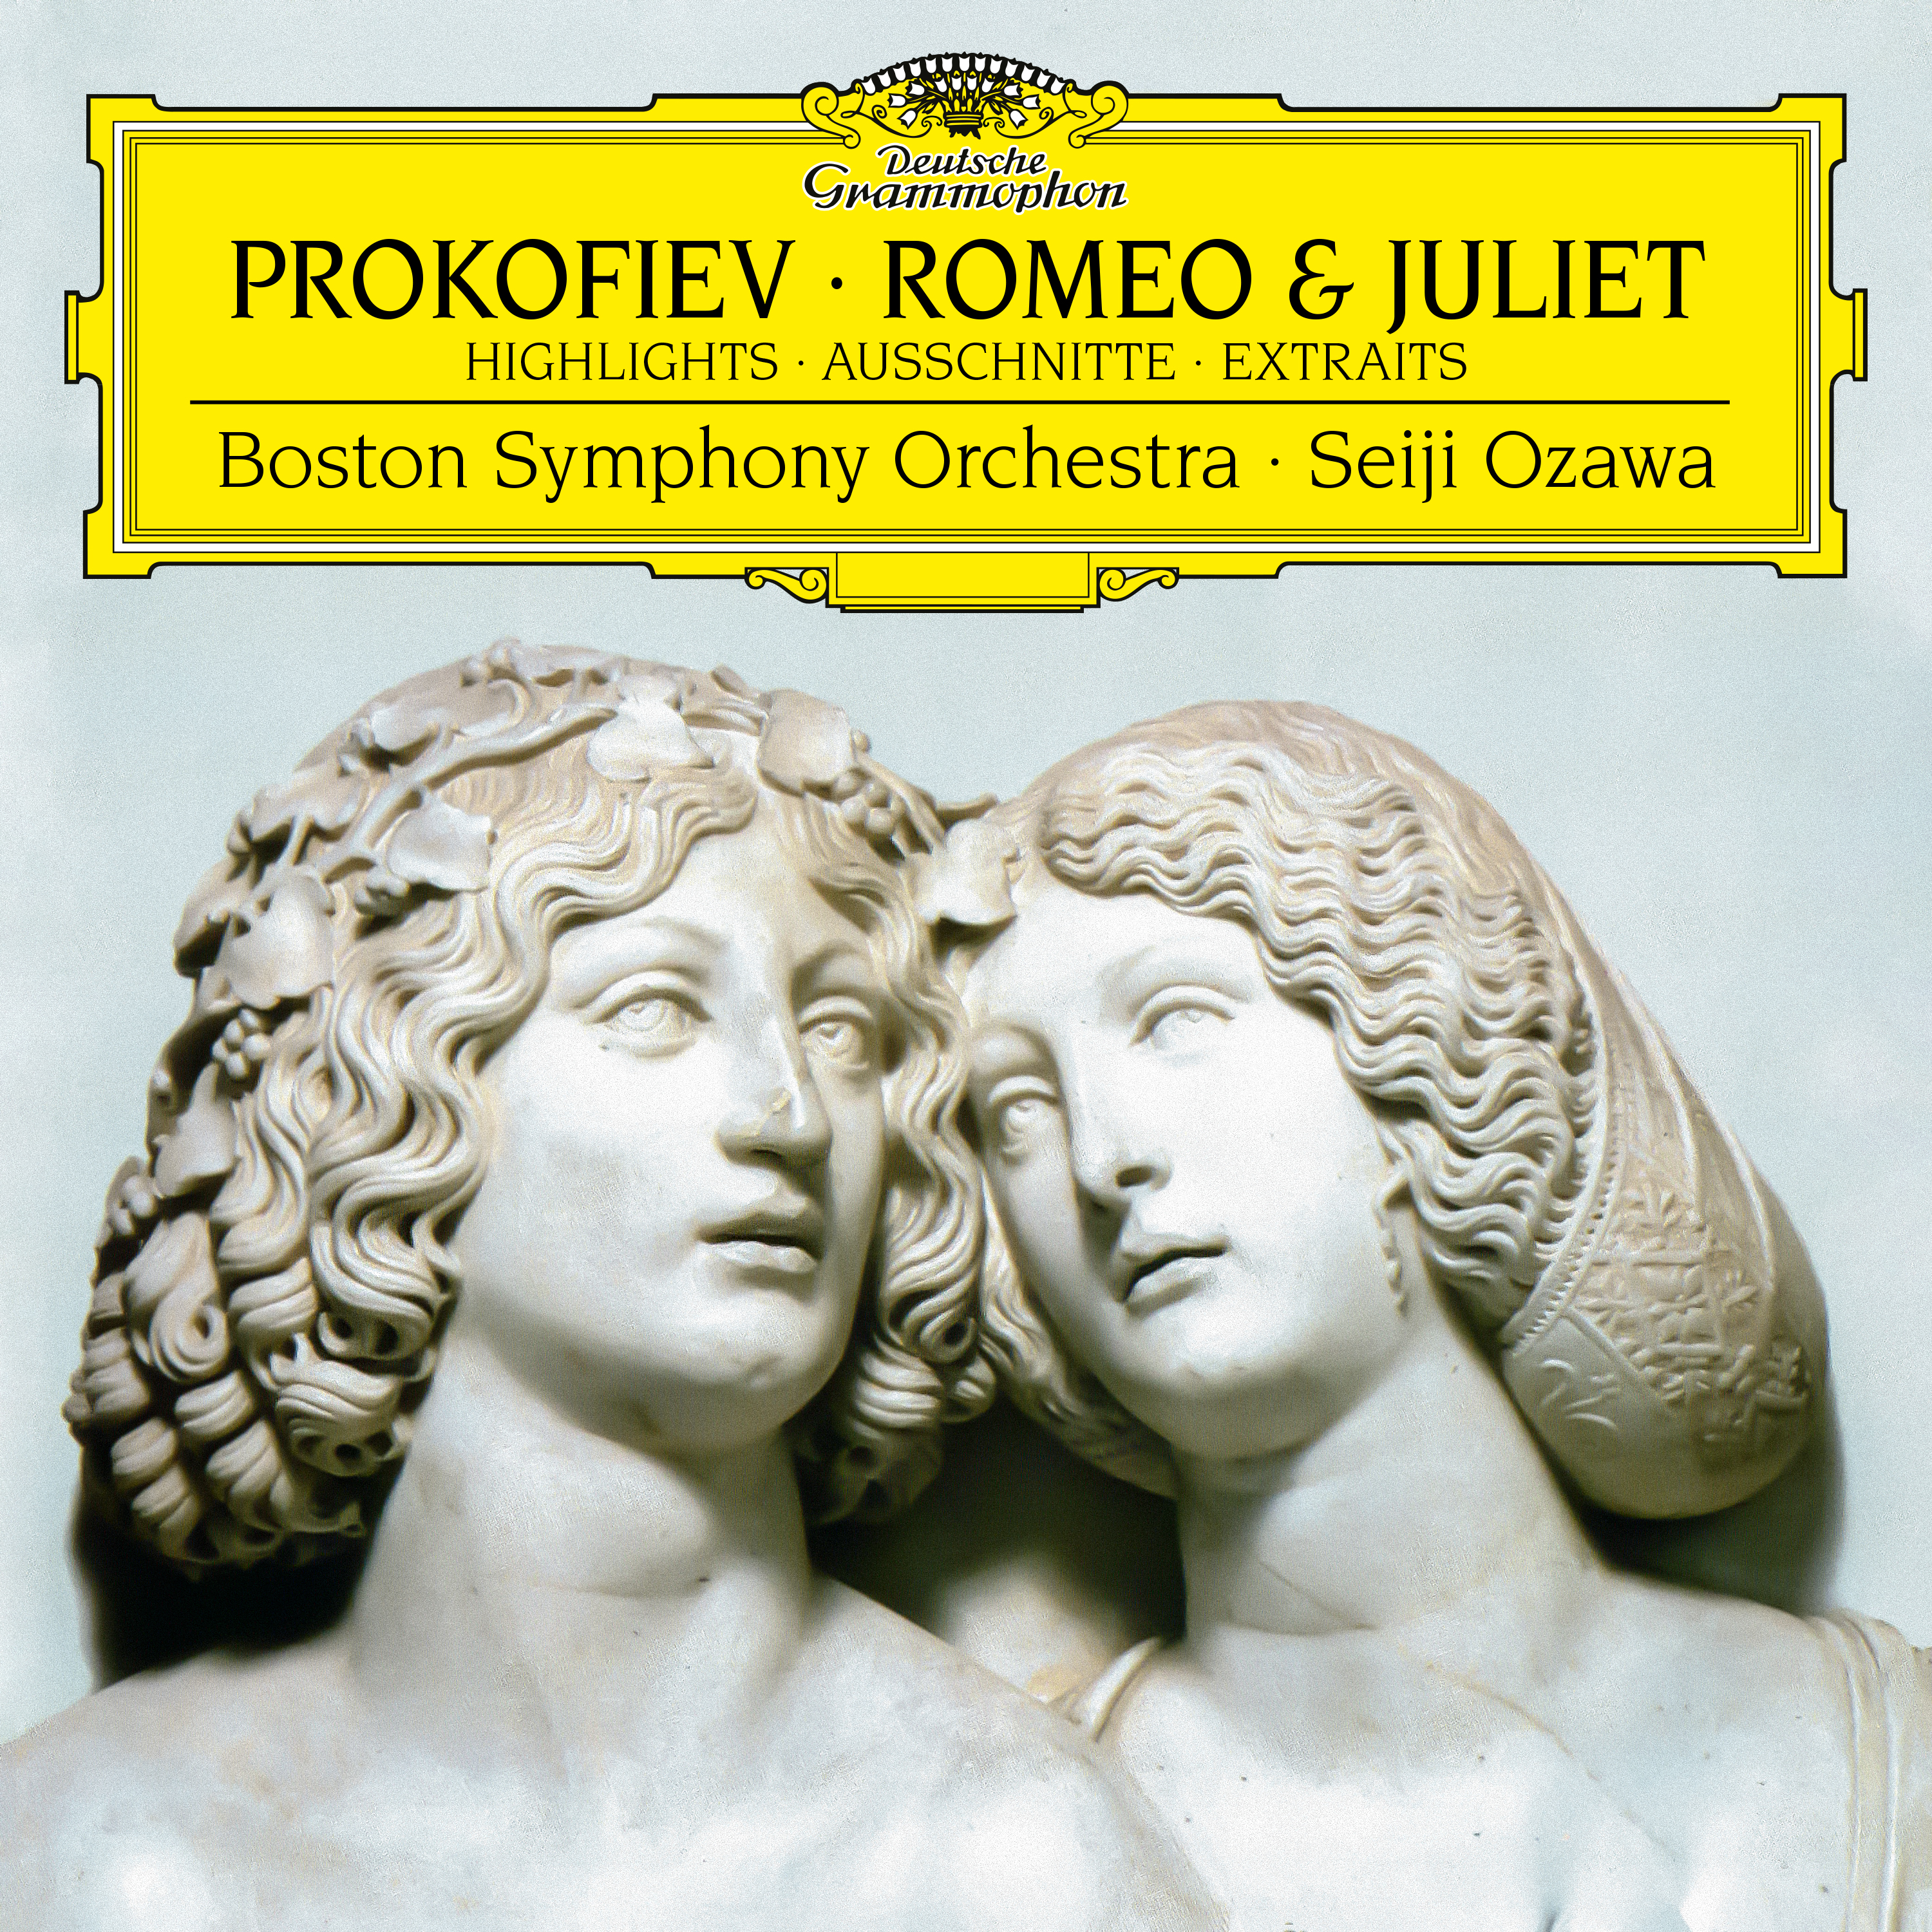 64 act. Prokofiev: Romeo & Juliet. Romeo and Juliet op. 64. Romeo and Juliet op. 64 Act 1. Prokofiev Gergiev Romeo and Juliet CD.